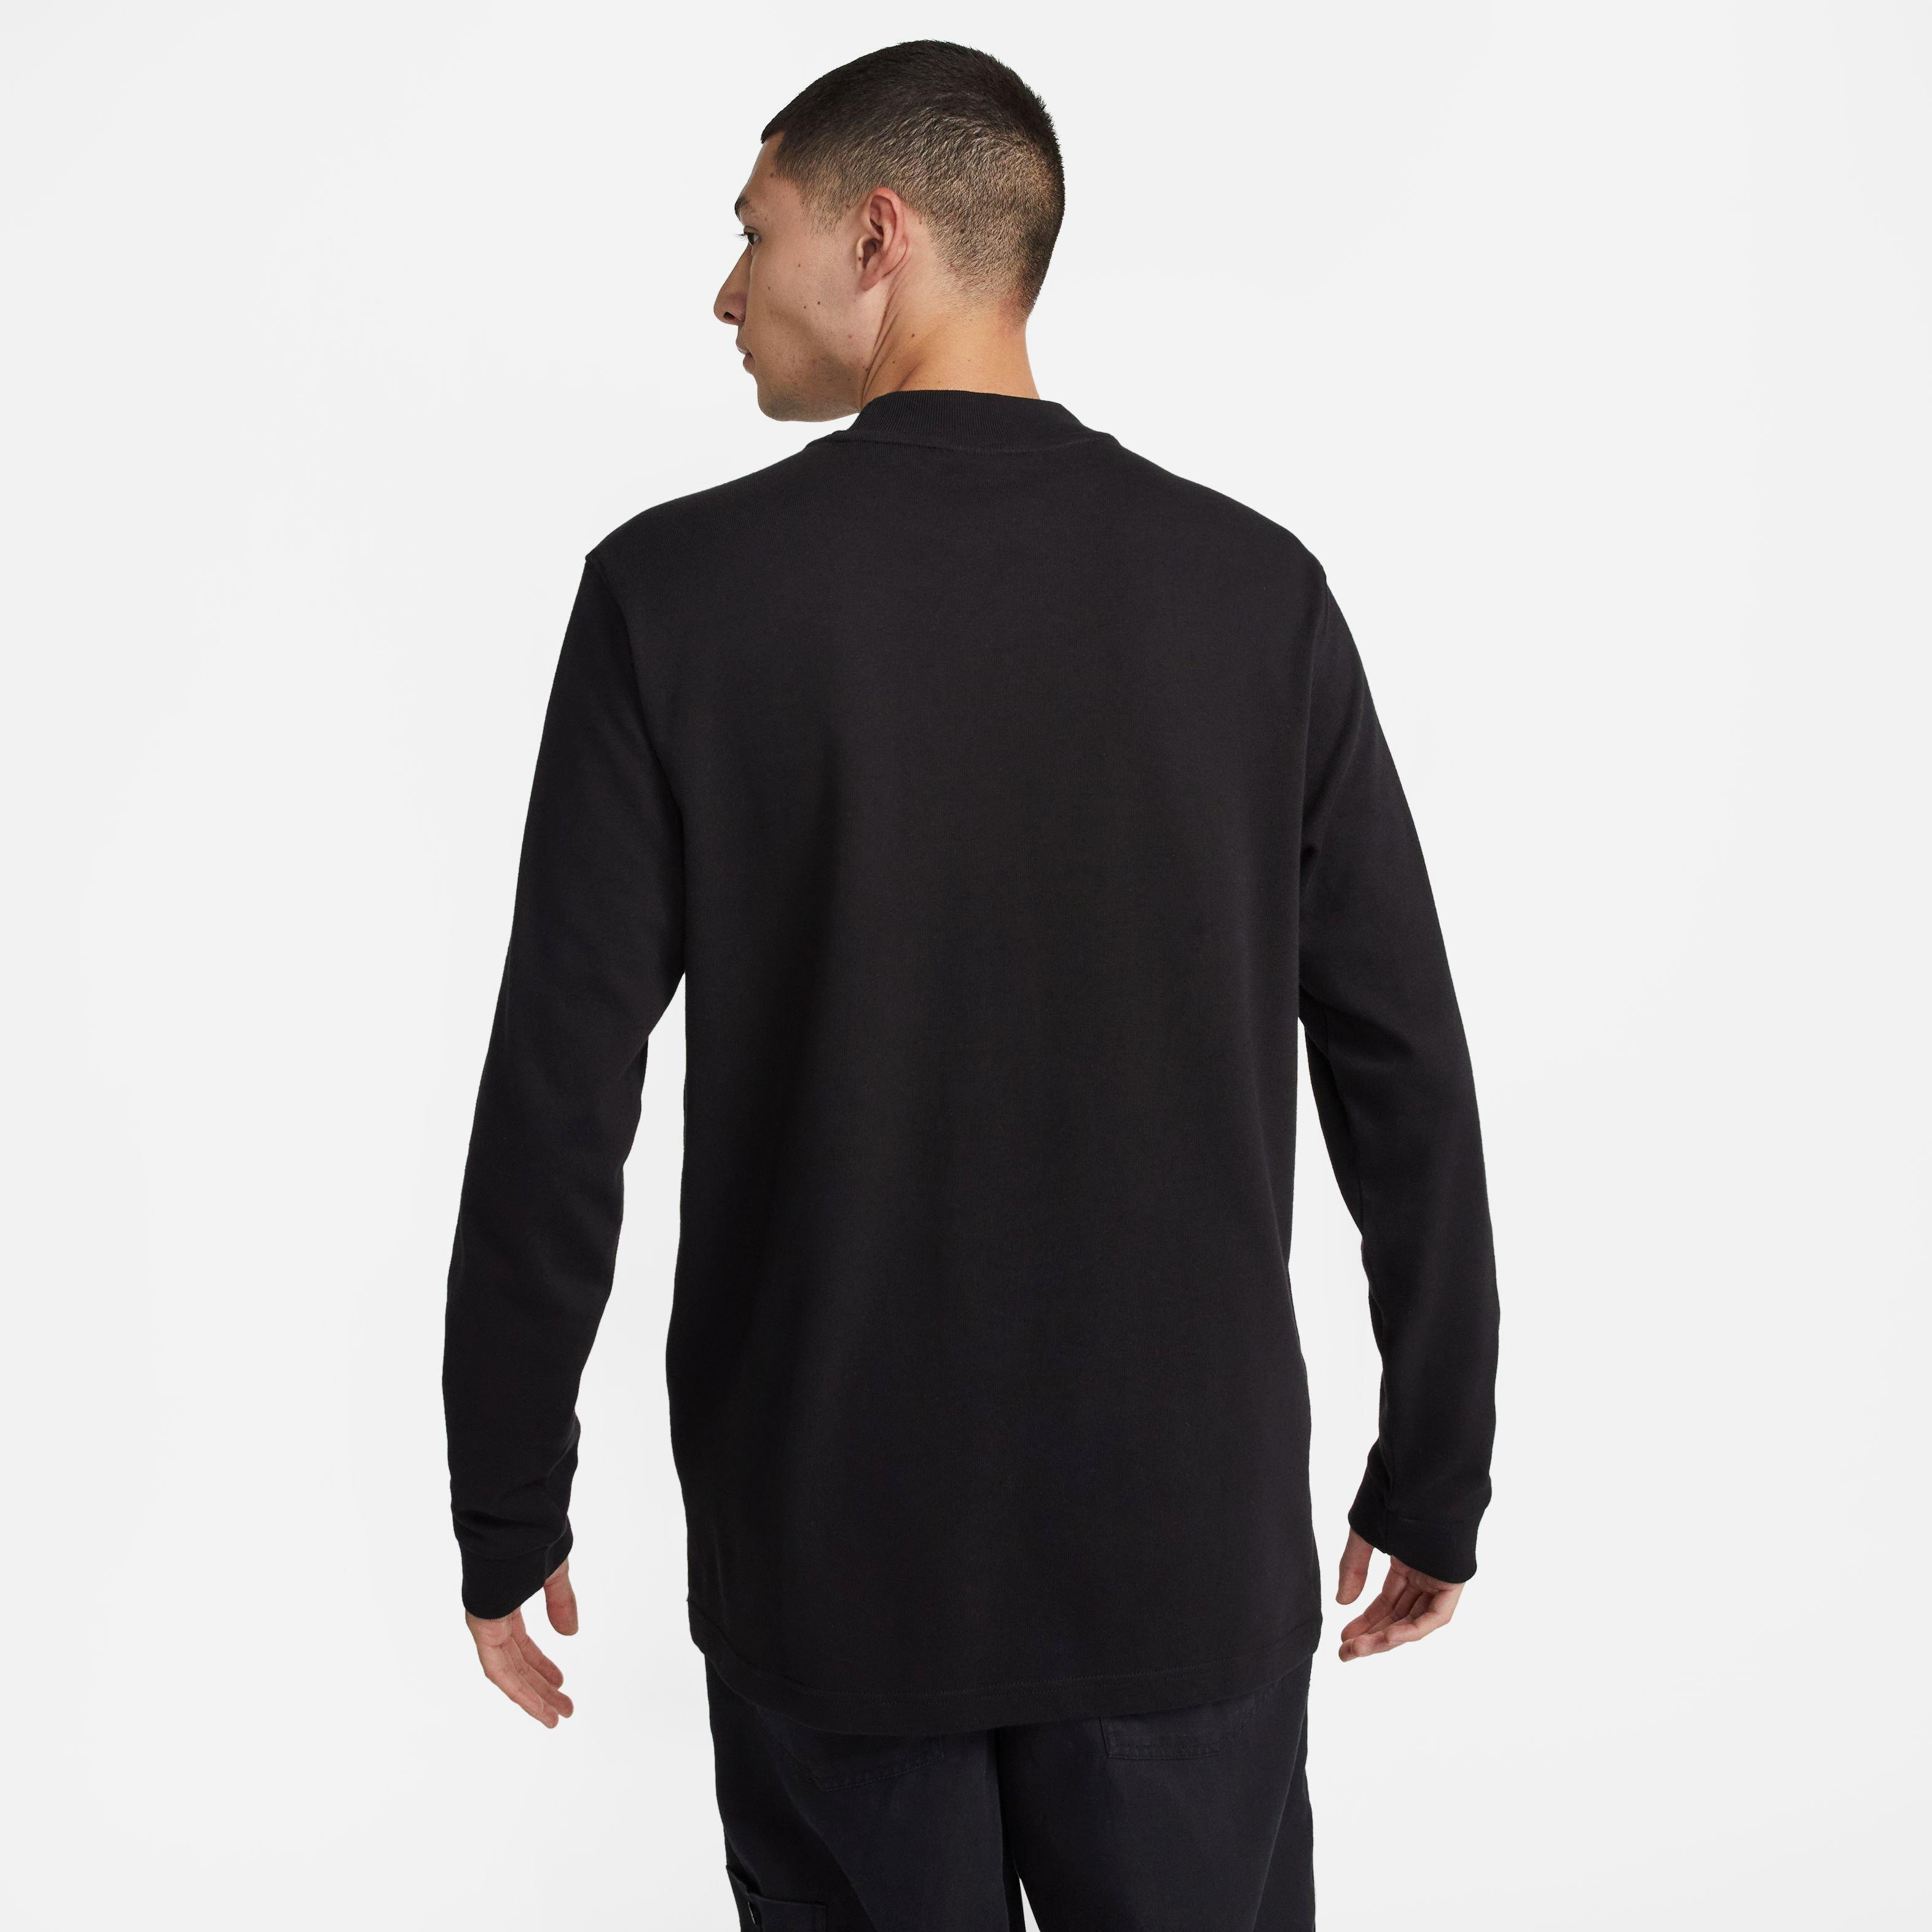 Nike Men's Sportswear '70s Long-Sleeve Tee-Black - Hibbett